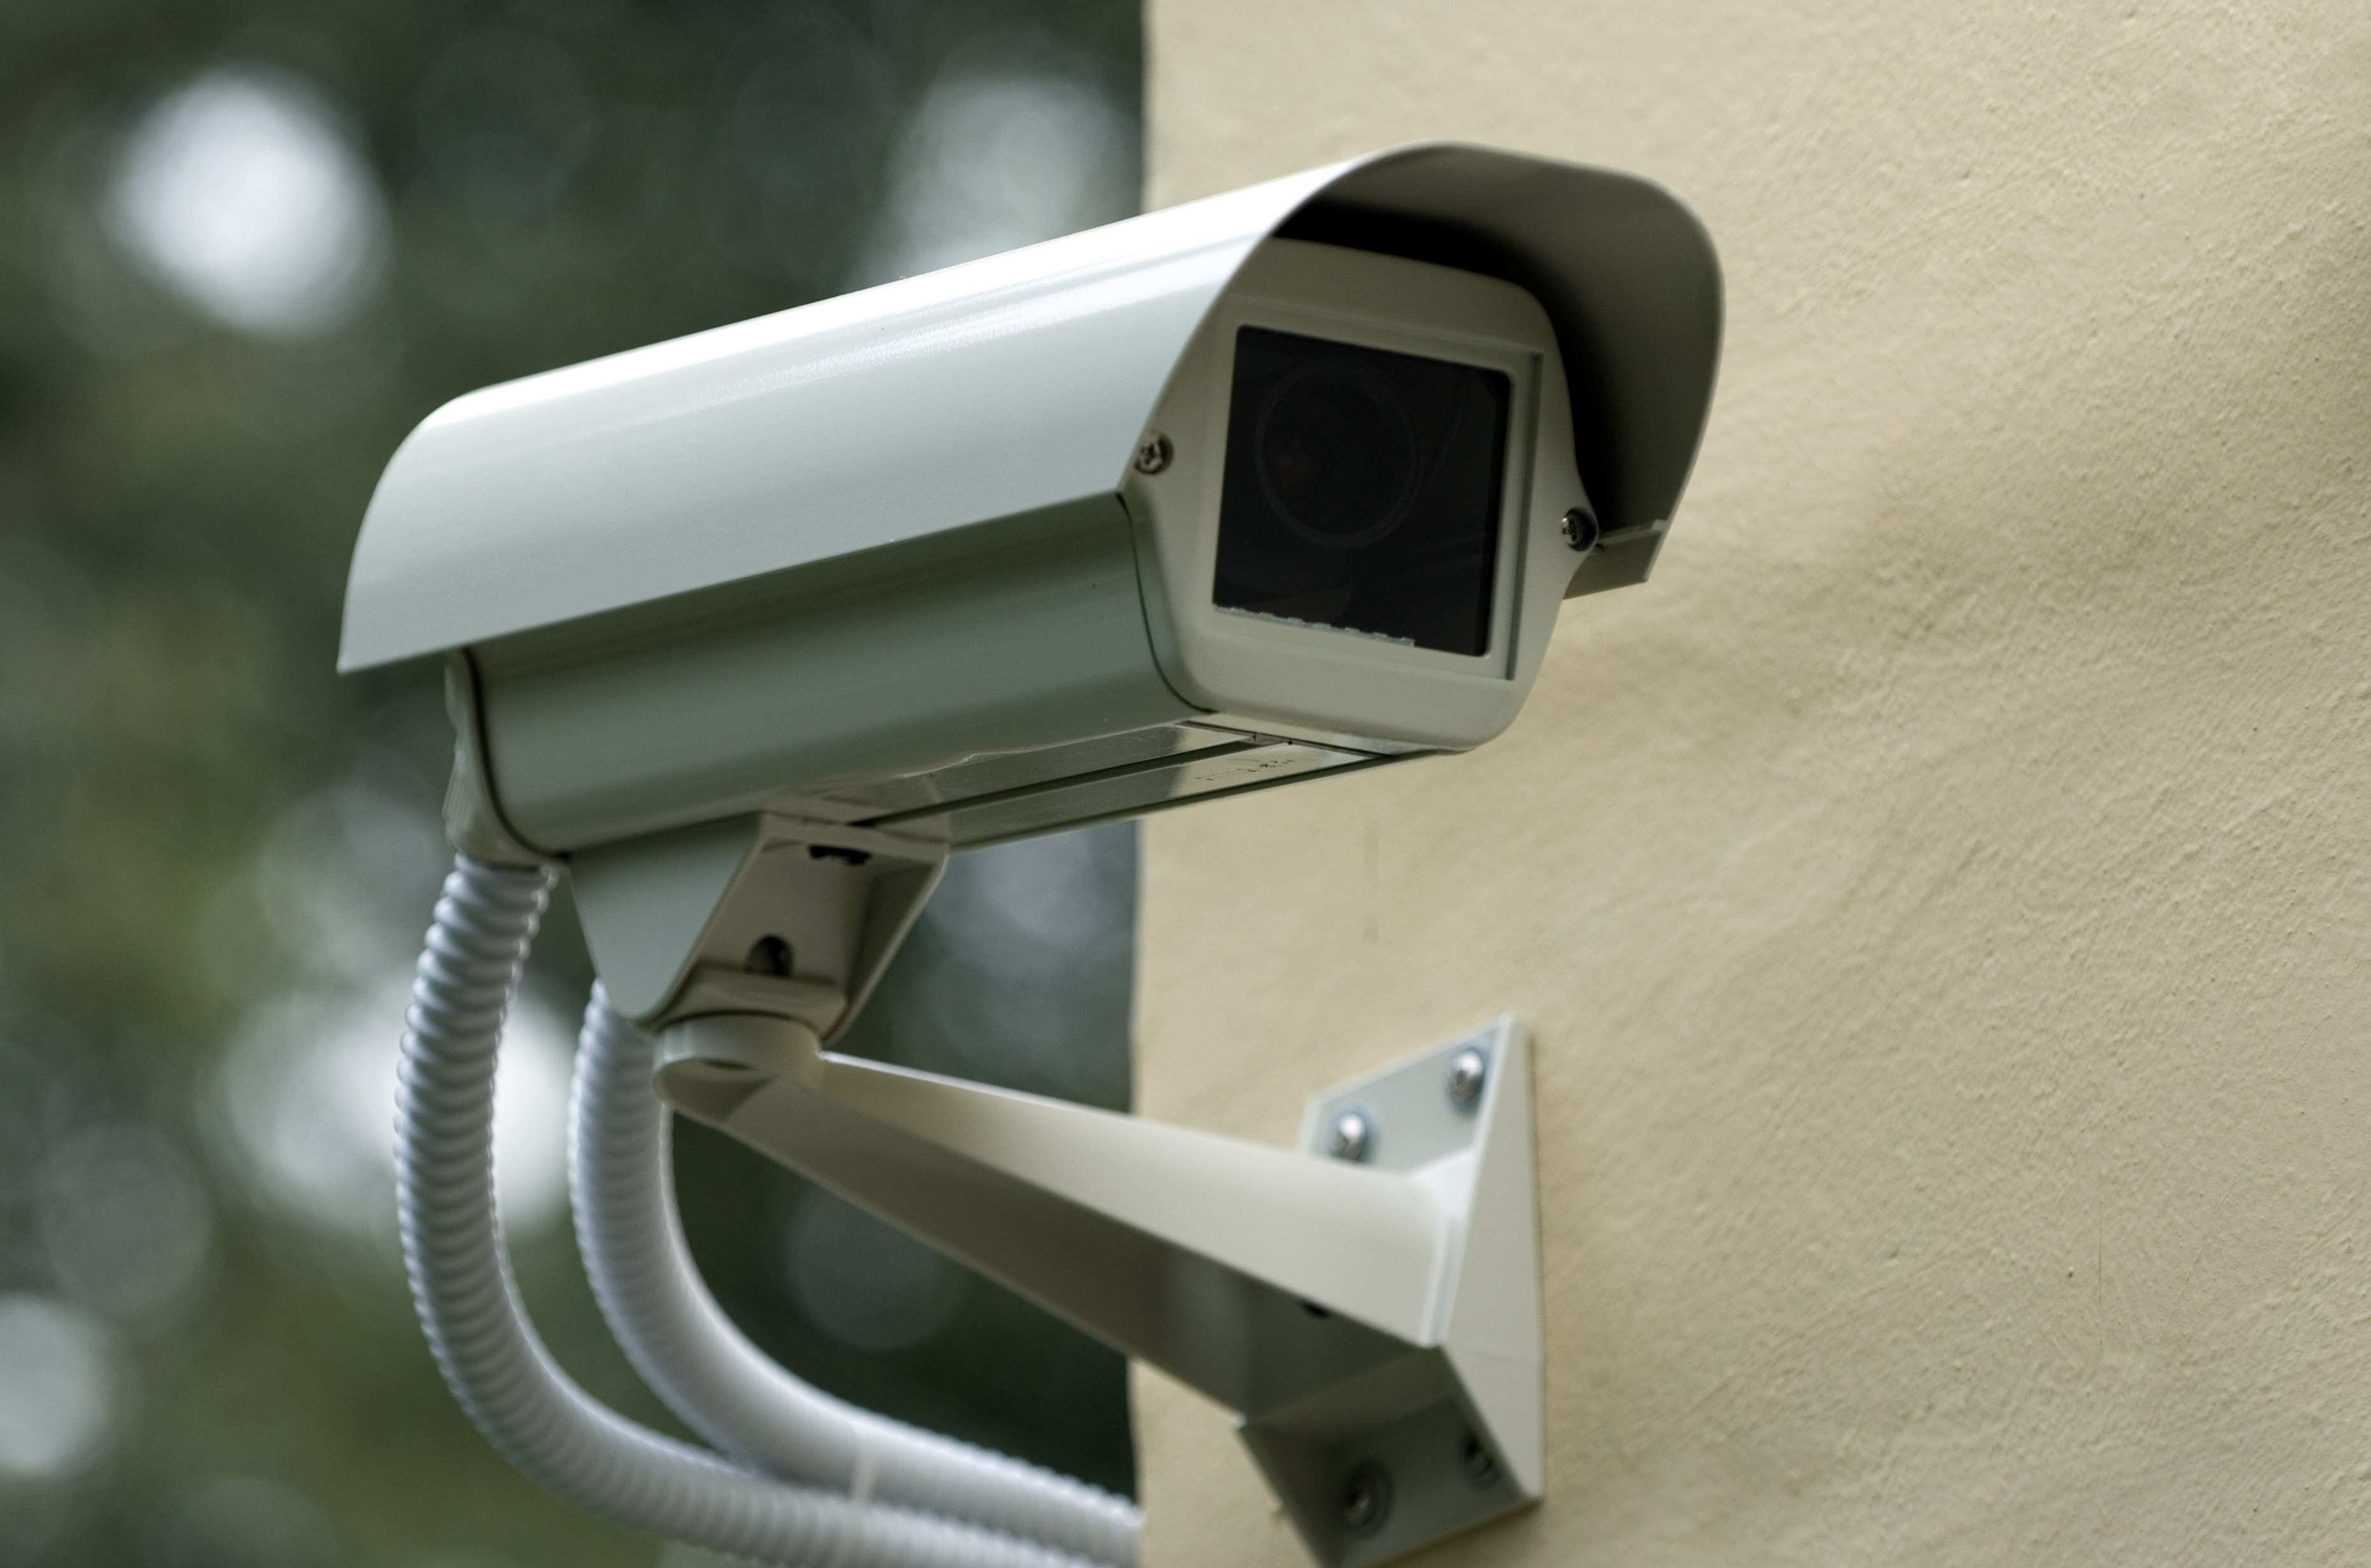 Security cameras essay example